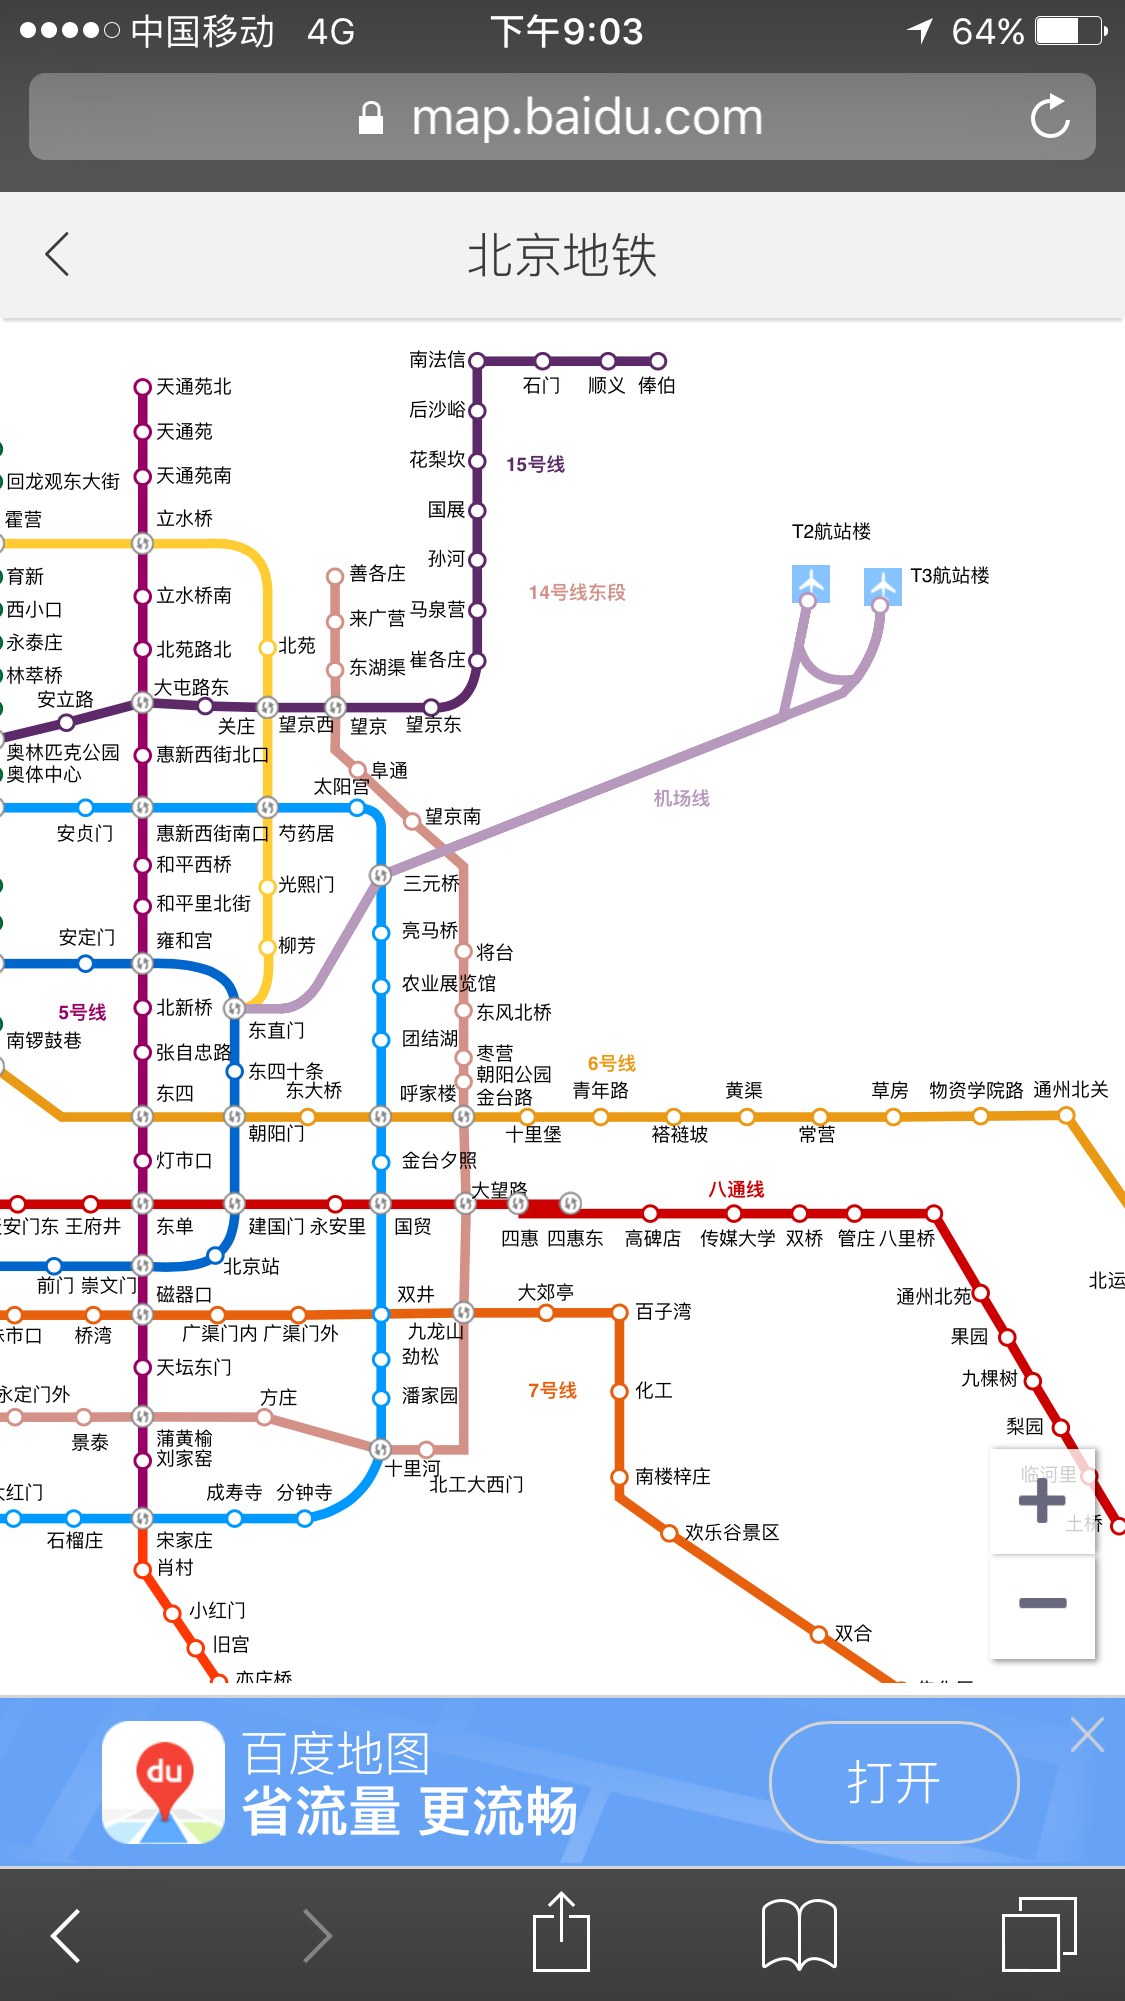 北京的地铁可以直接到达t3航站楼吗?